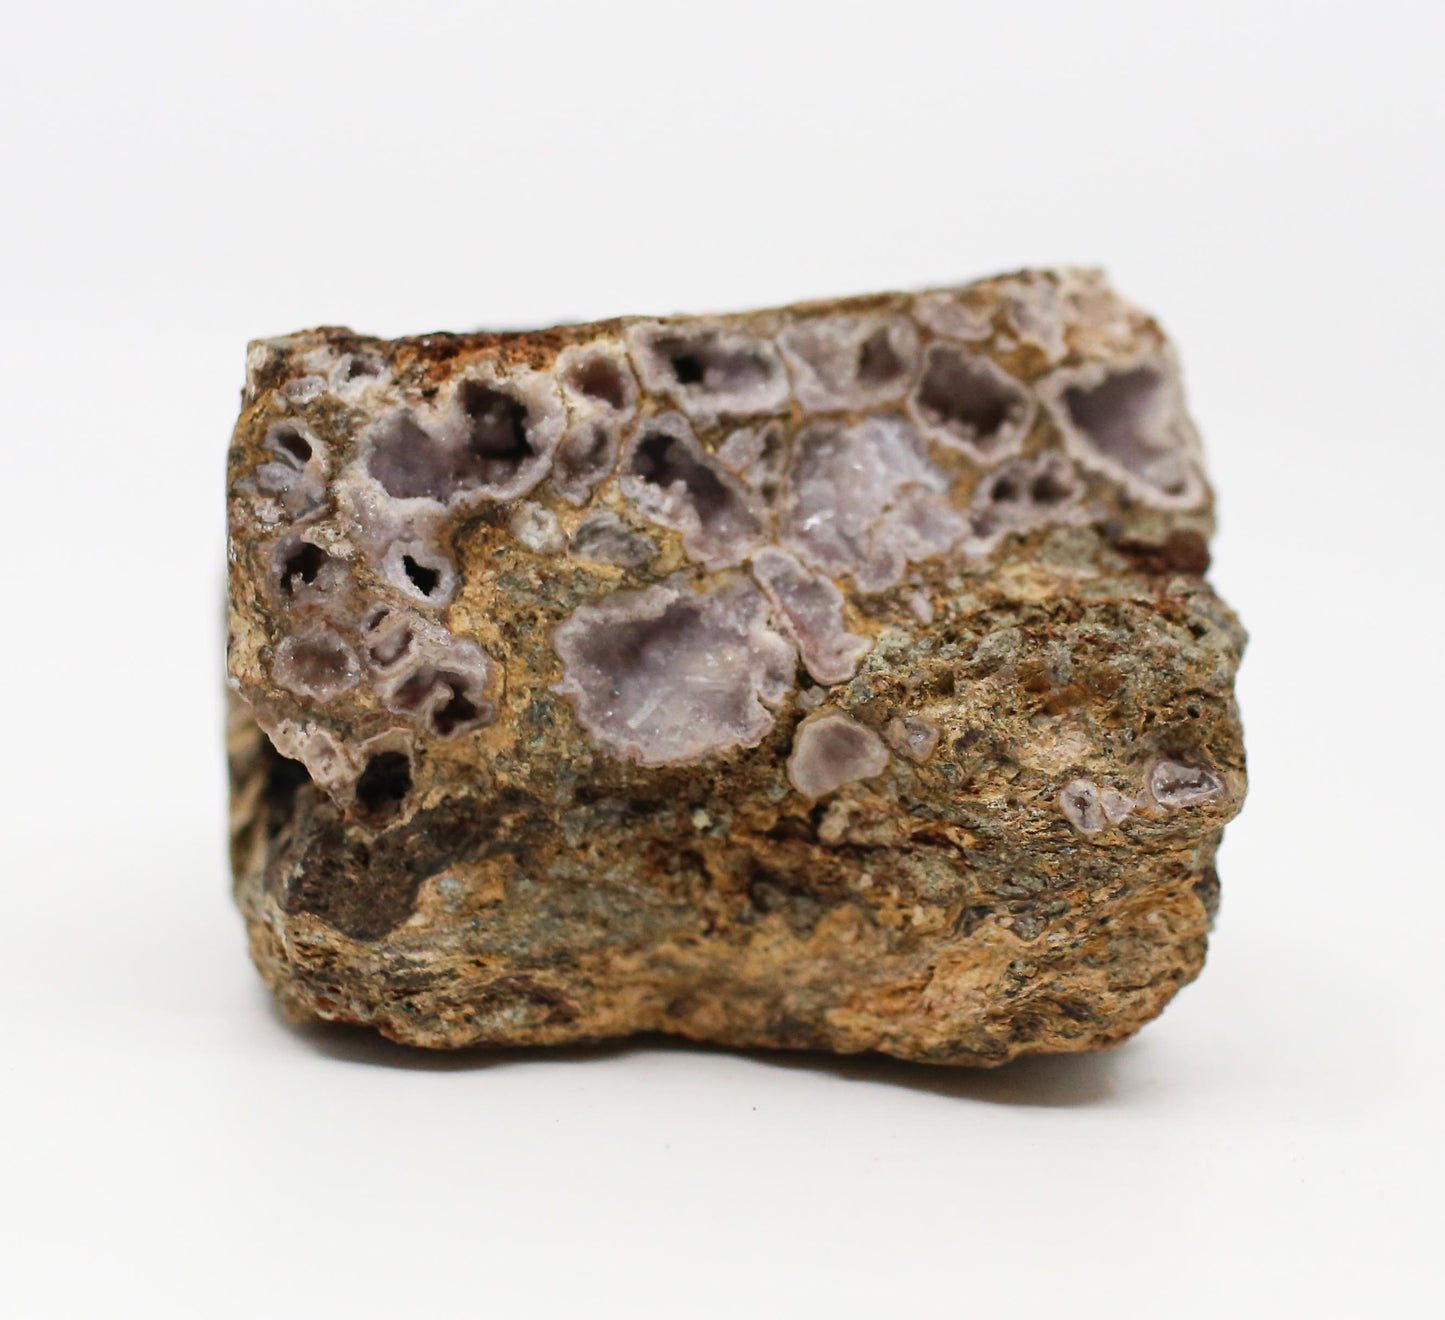 Druzy Mineral Geode Specimen From Lemur Island